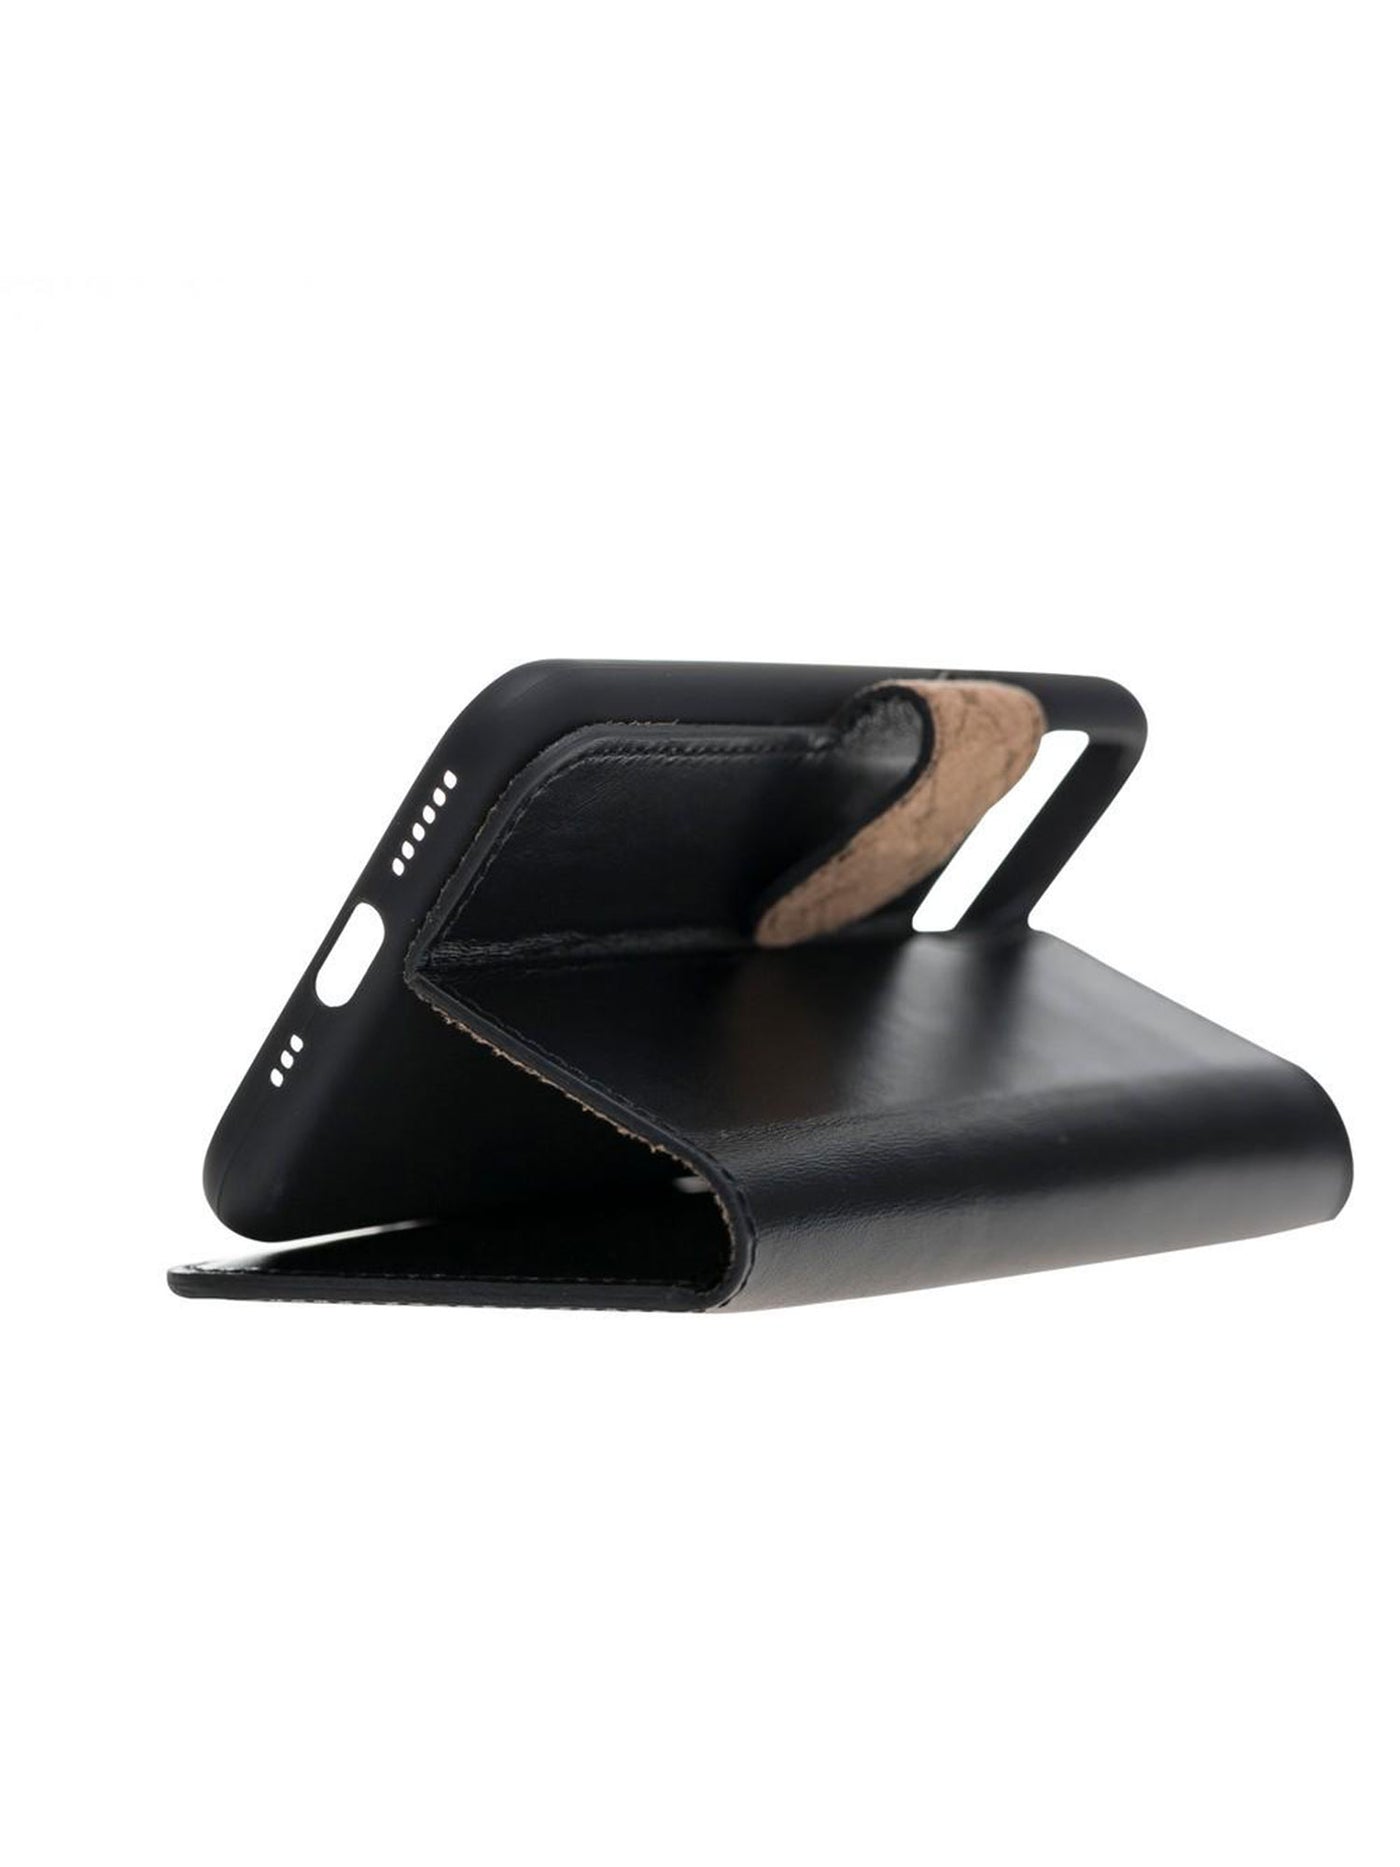 Plånboksfodral i äkta läder för Apple iPhone 11 Pro från Bouletta - Svart #color_svart